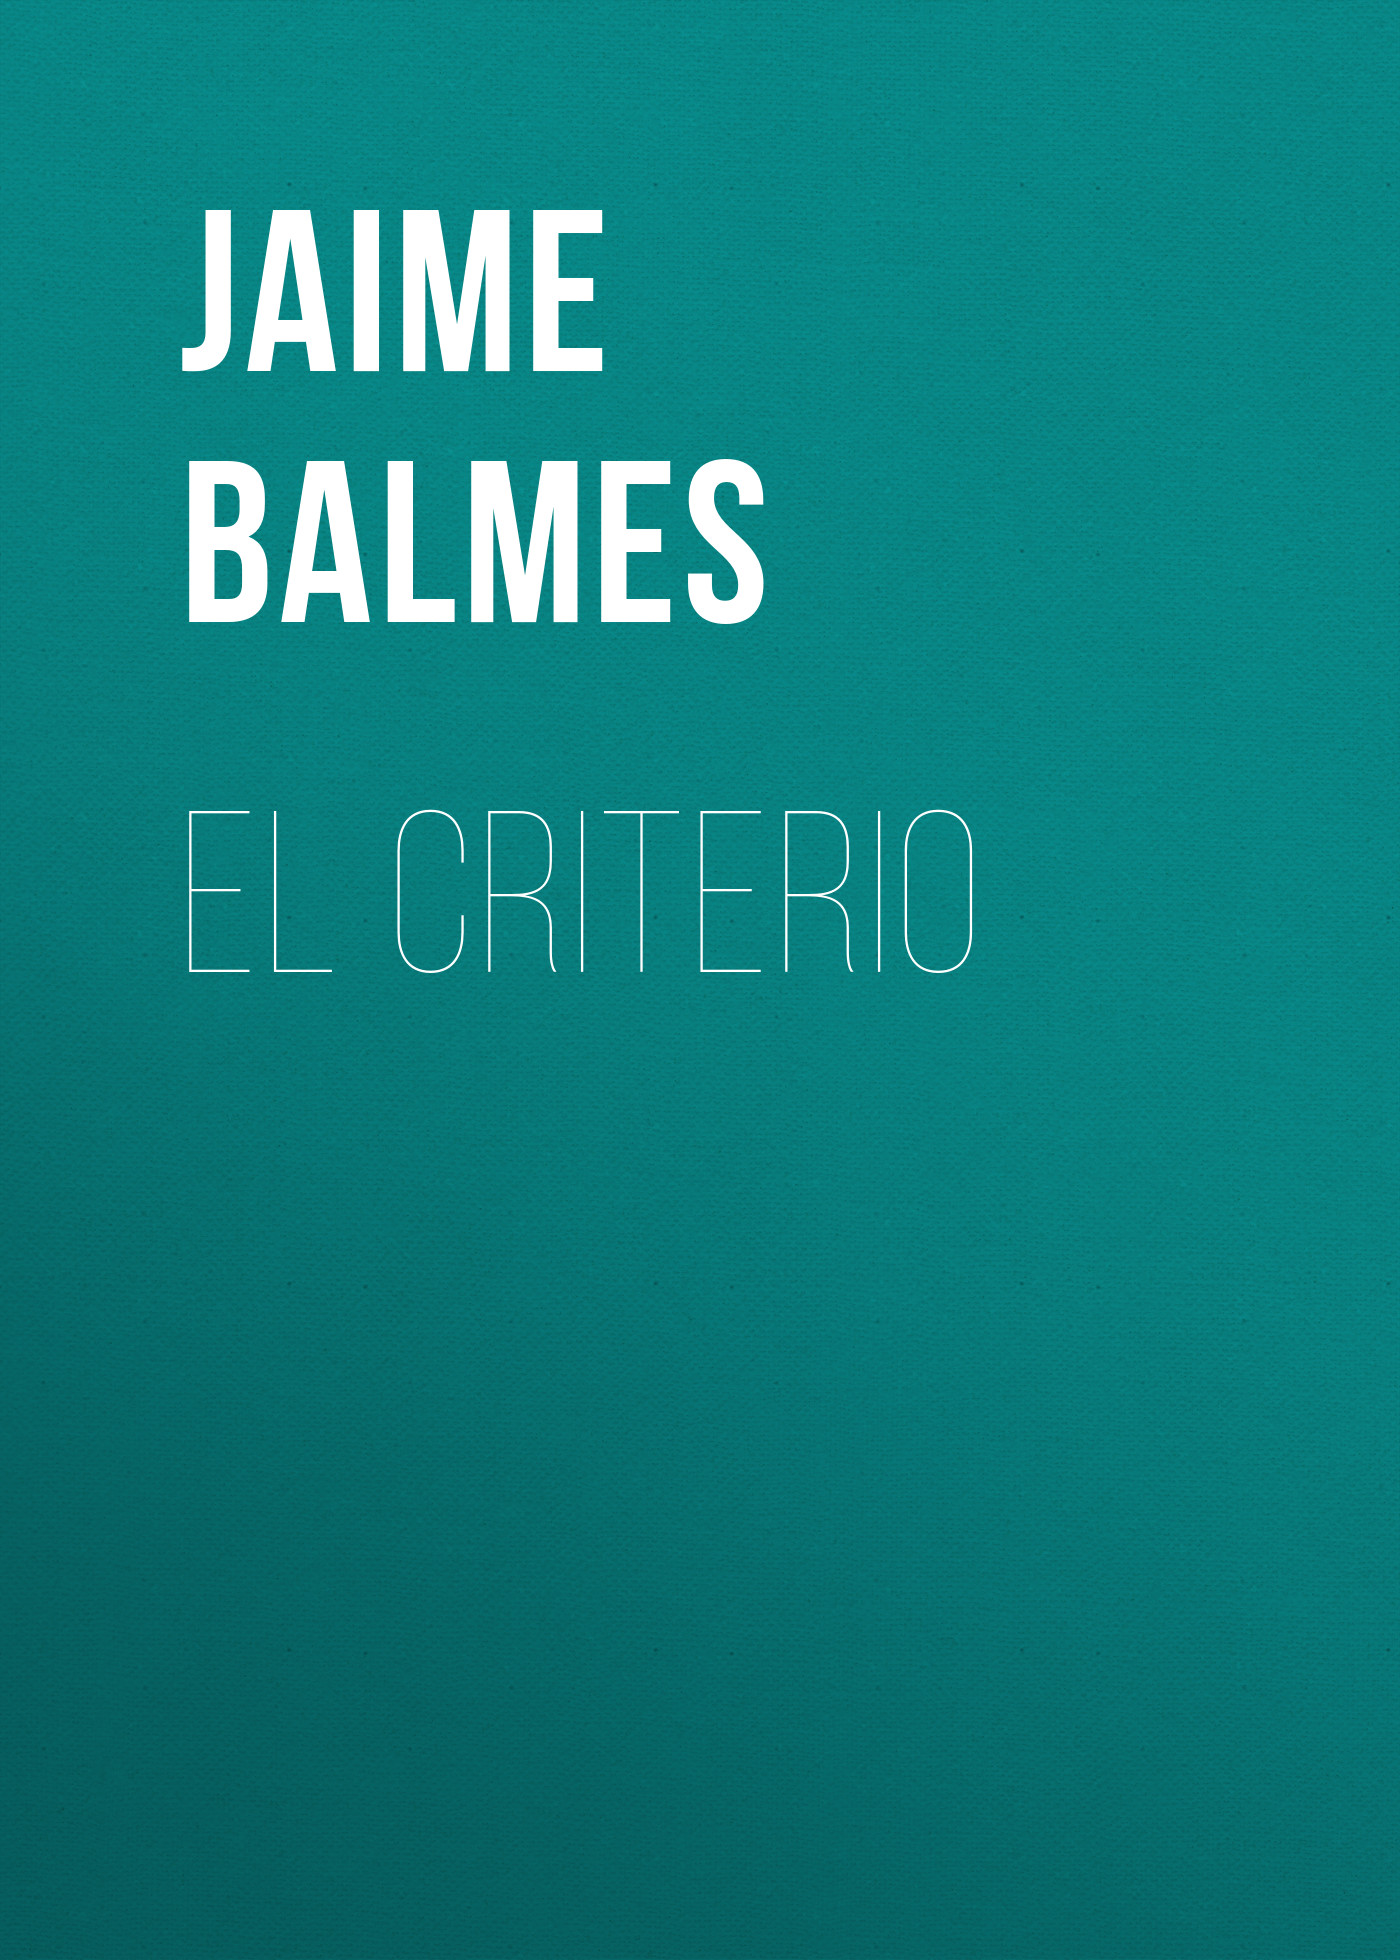 Книга El Criterio из серии , созданная Jaime Balmes, может относится к жанру Зарубежная старинная литература, Зарубежная классика. Стоимость электронной книги El Criterio с идентификатором 24173492 составляет 0.90 руб.